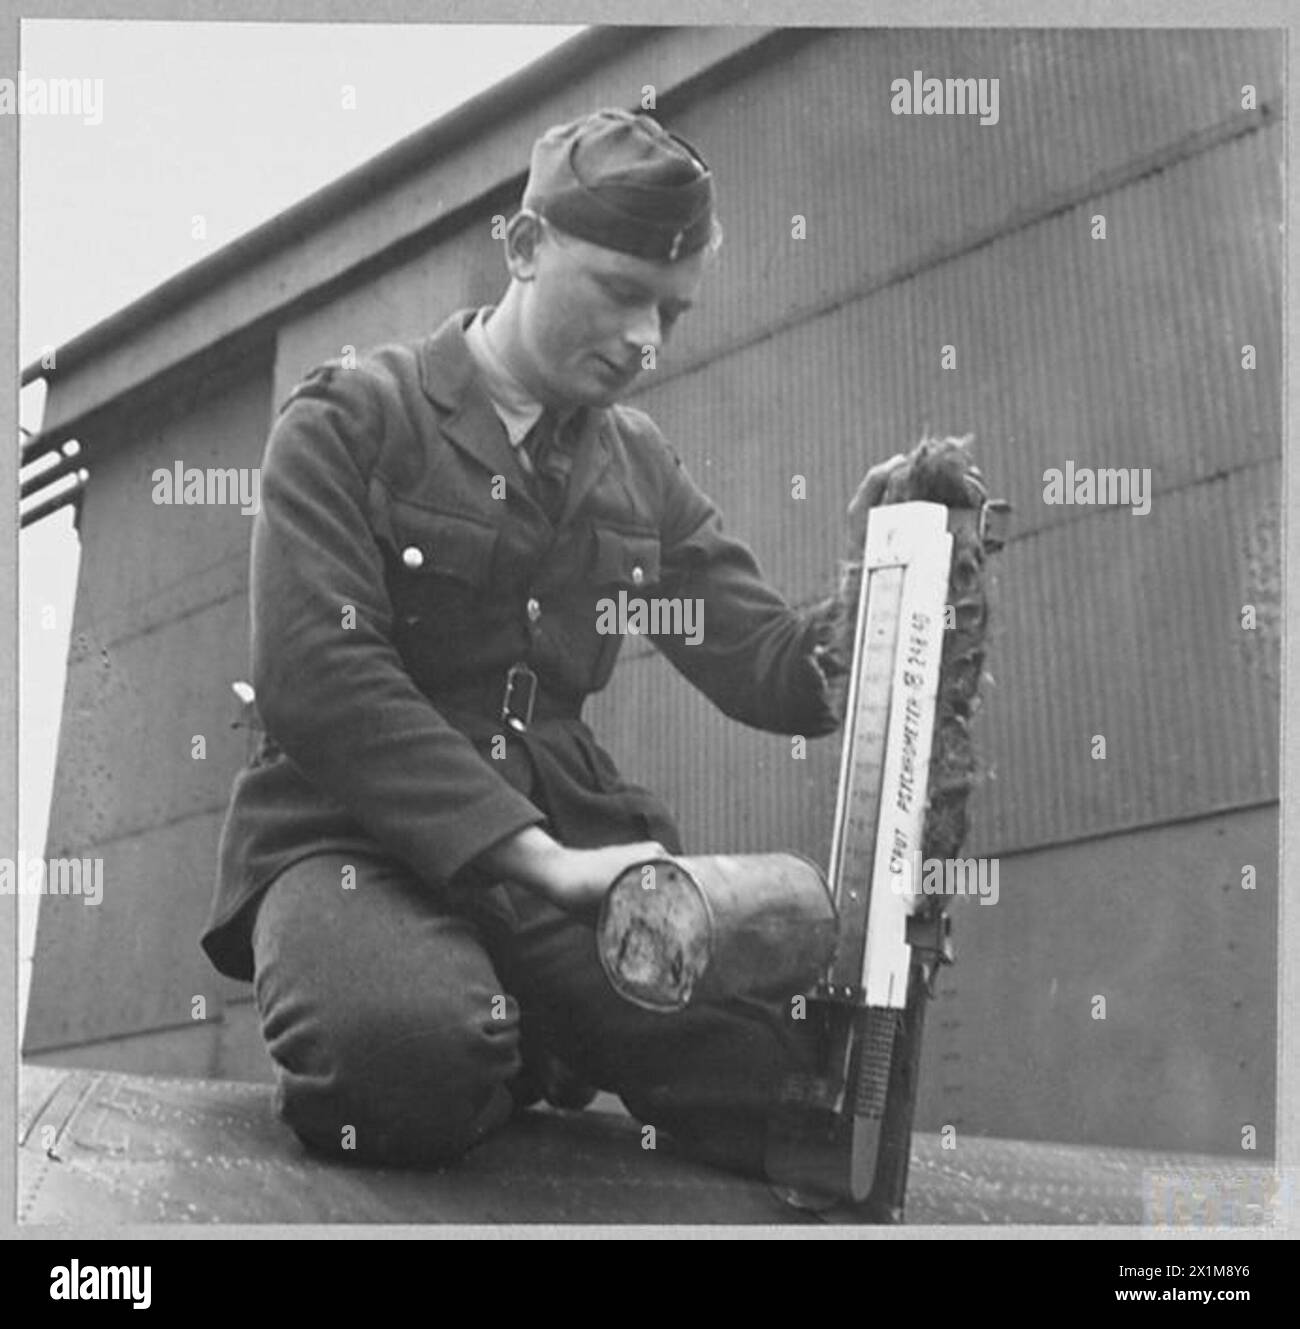 700 "MET CLIMMBS": UN RECORD MONDIALE! - Uno dei membri del personale di terra "domina" lo psicrometro [termometro a bulbo umido e secco] trasportato sull'ala dell'aeromobile, la Royal Air Force Foto Stock